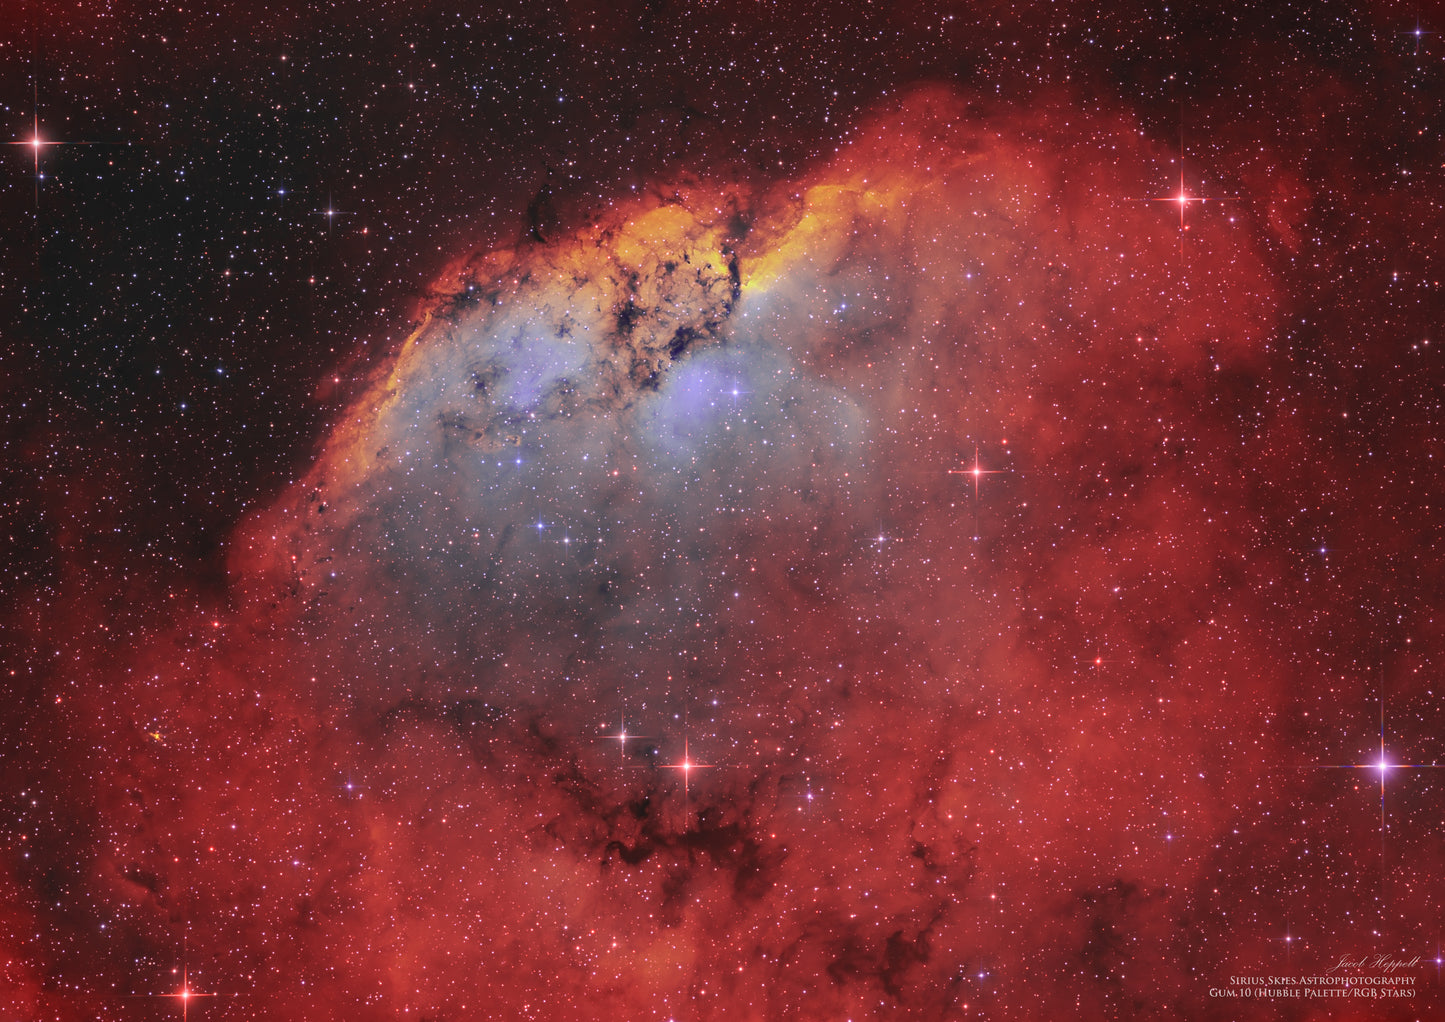 Gum 10 (RCW 19) nebula